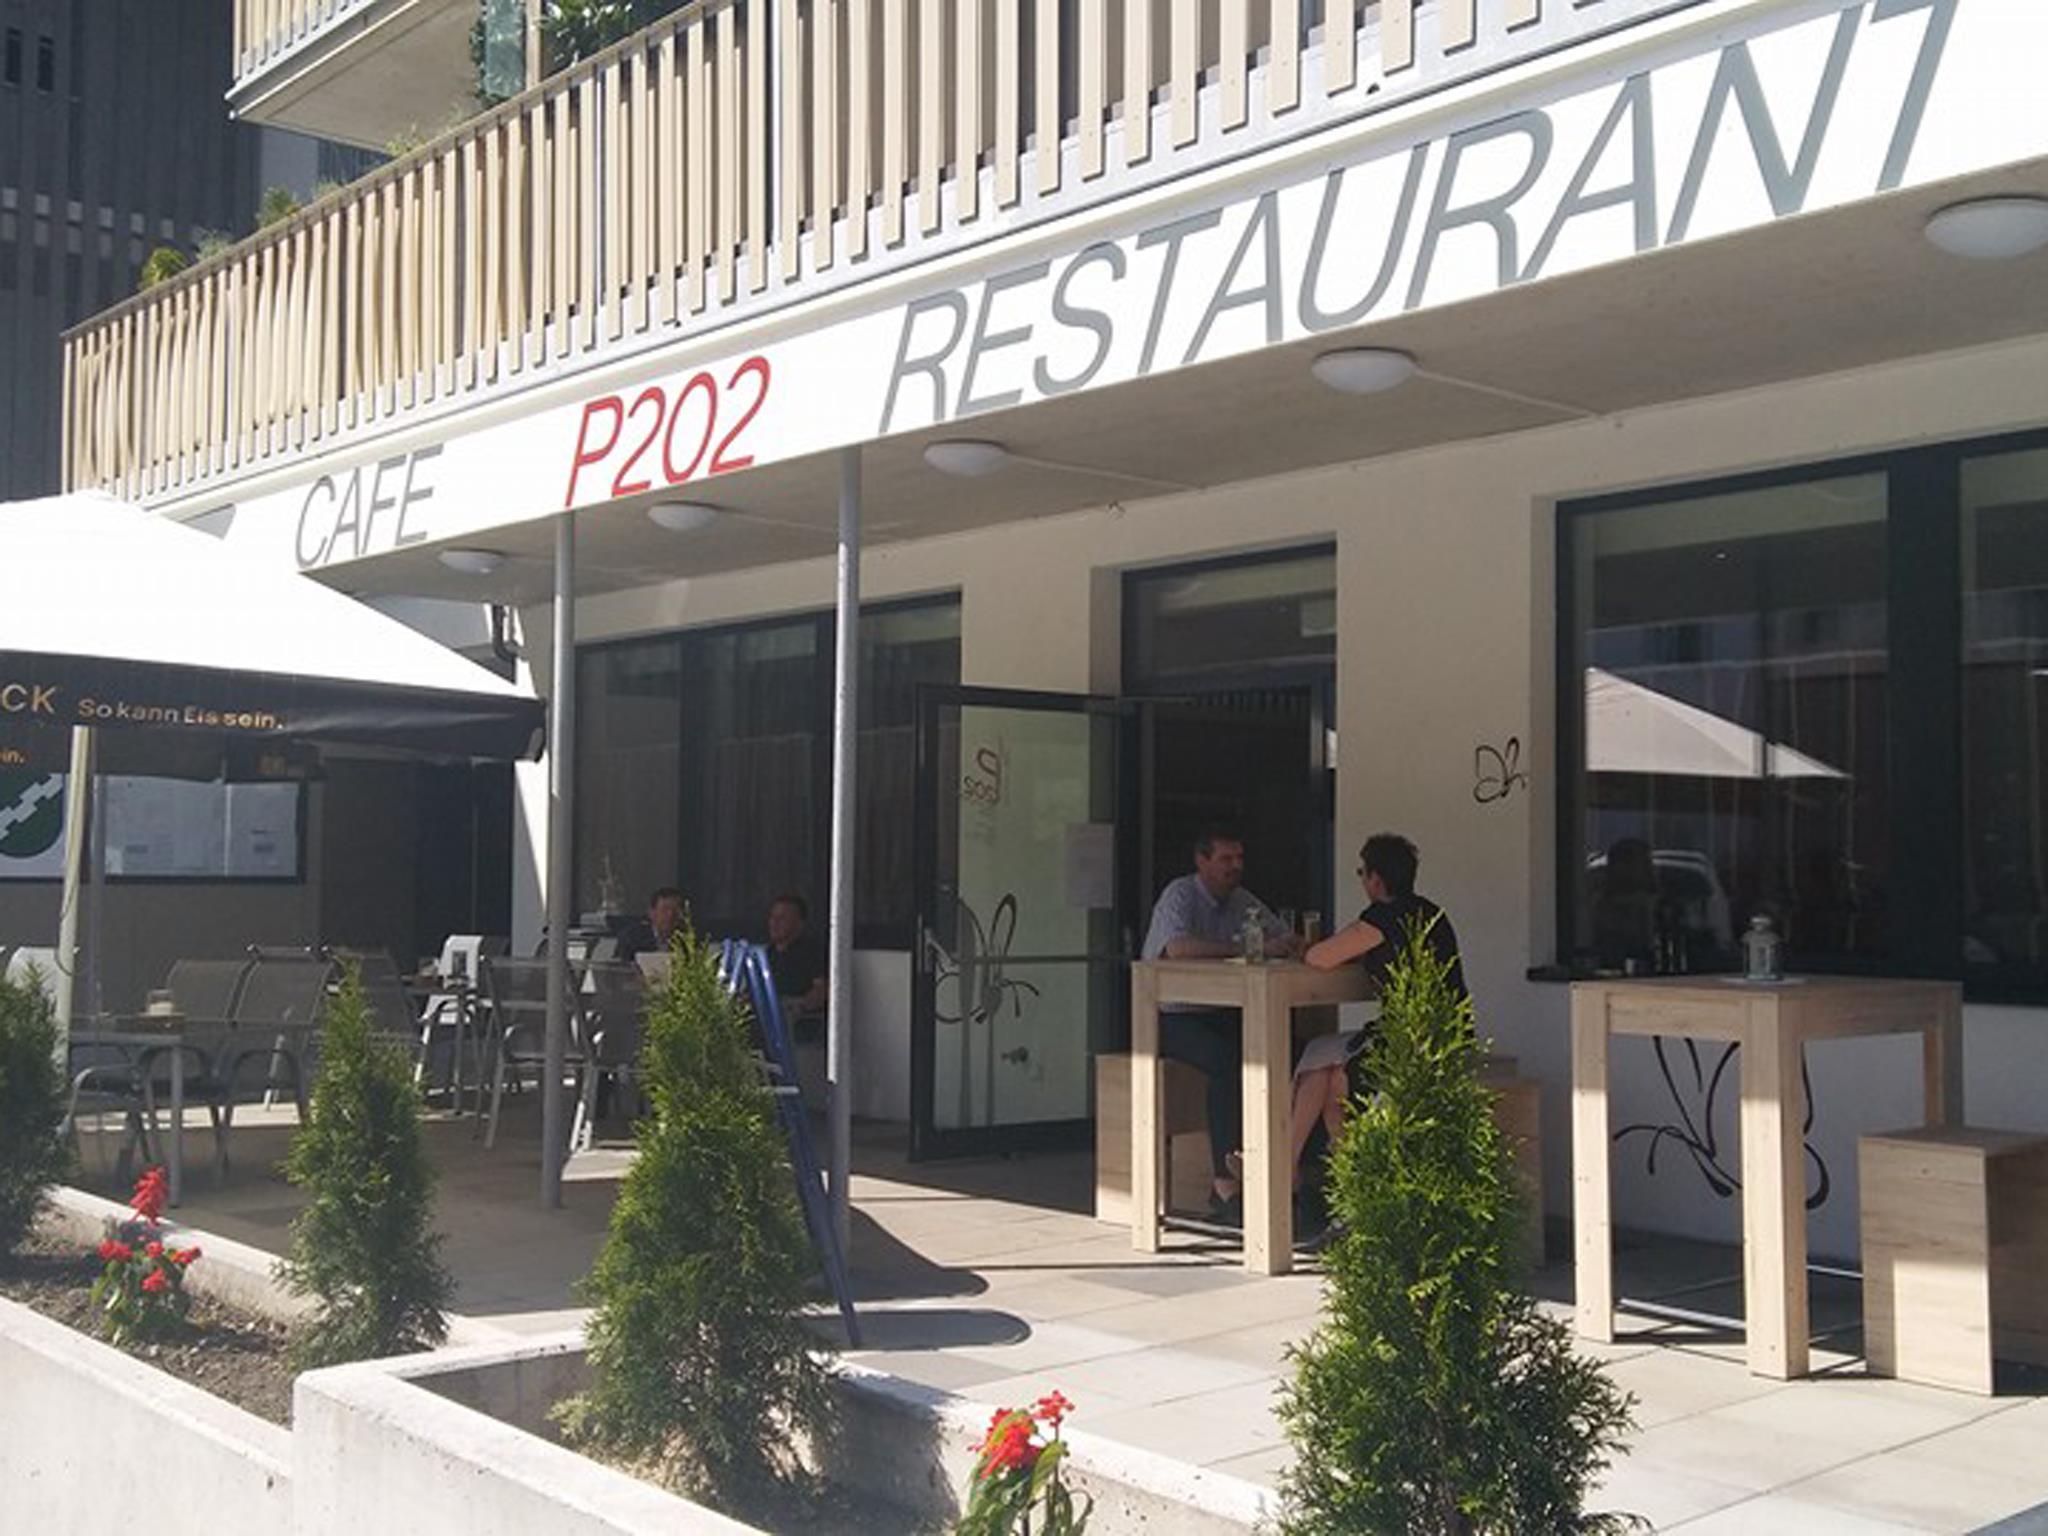 P 202 - Restaurant, Café